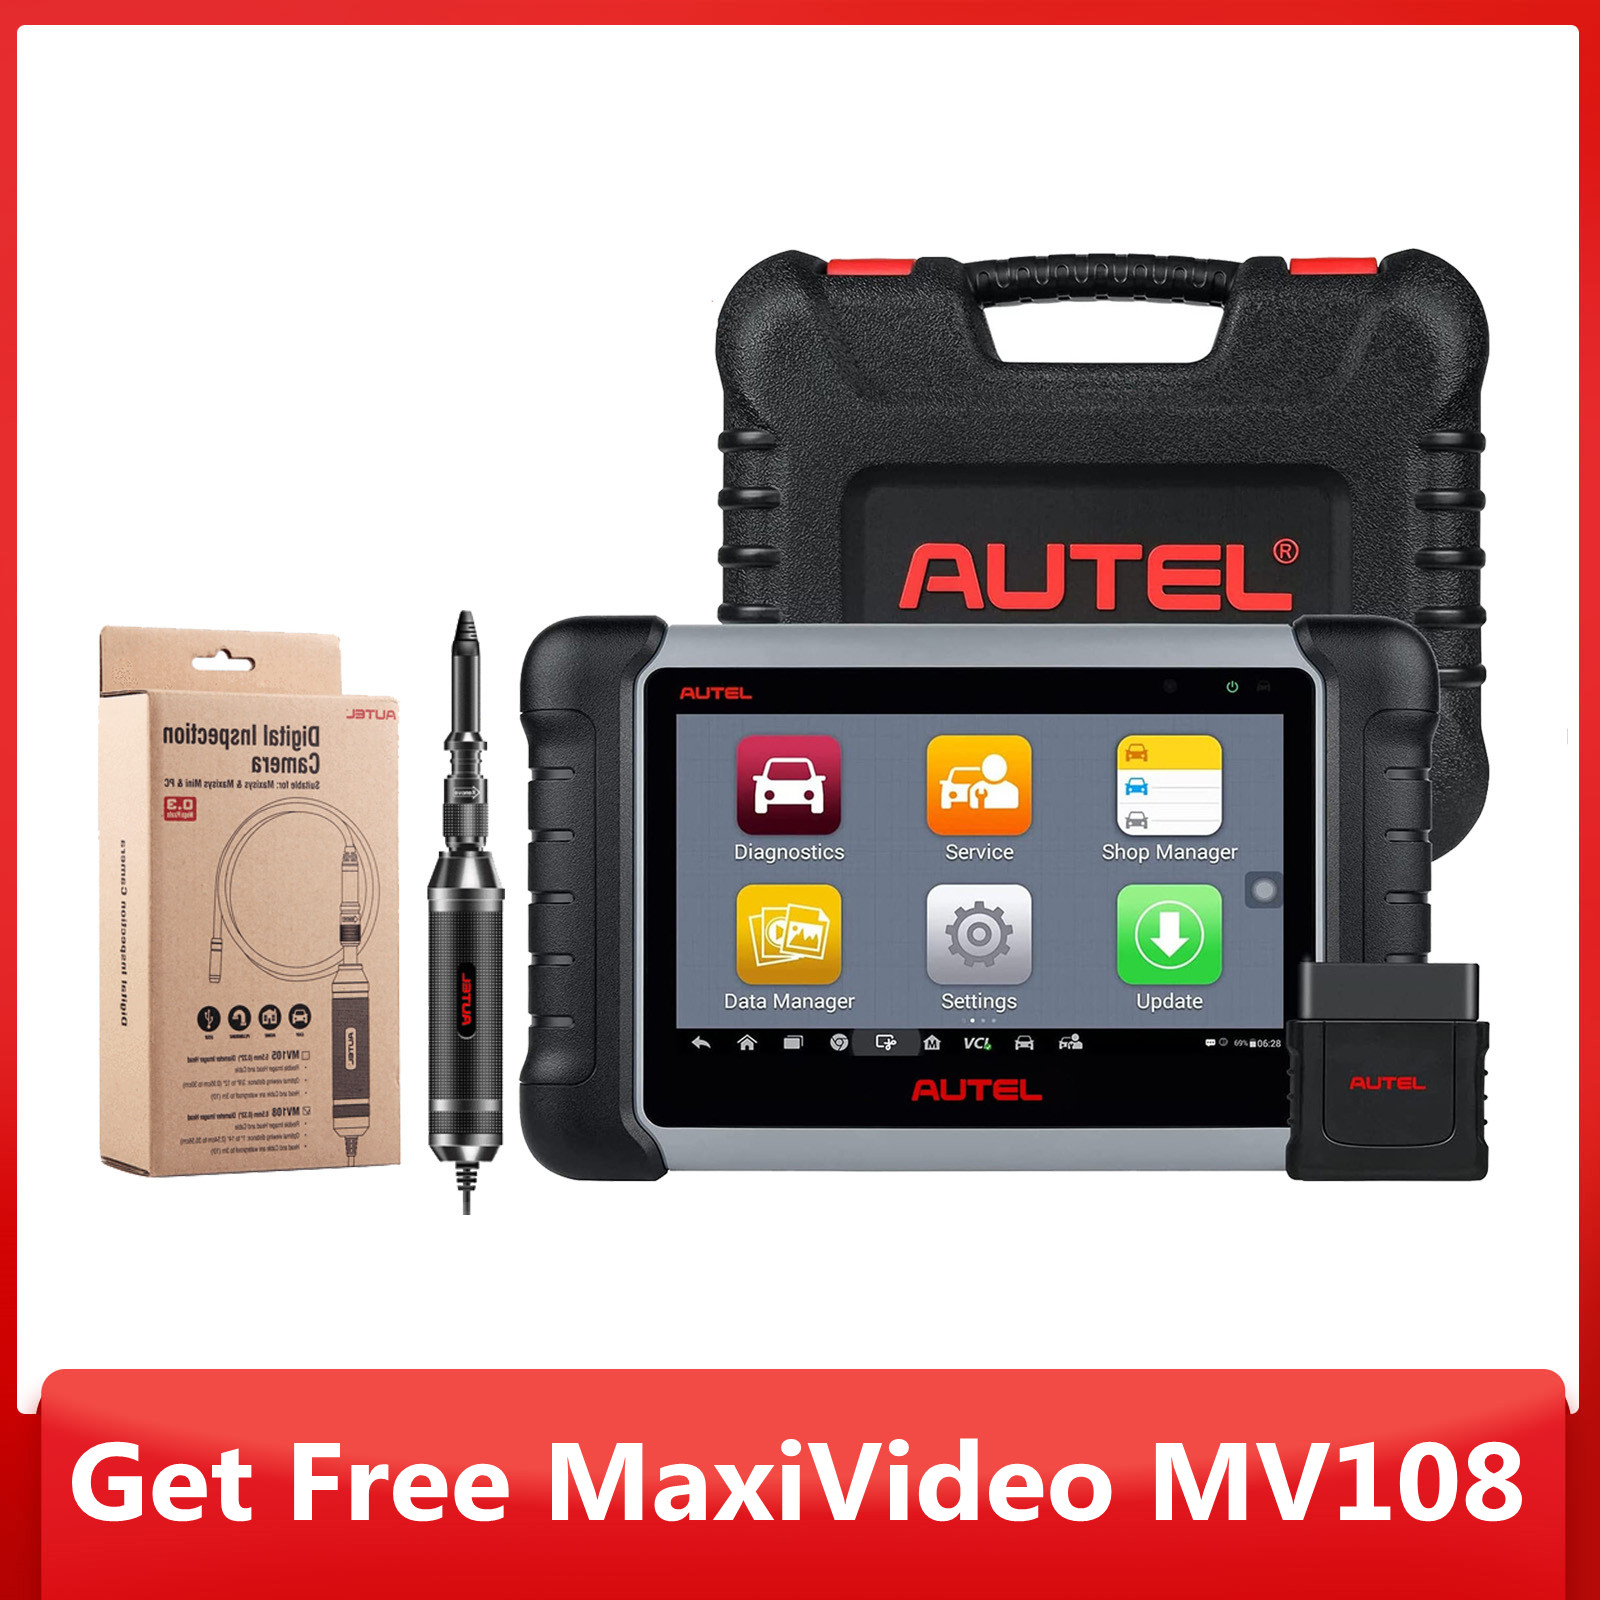 Autel MK808BT PRO (Autel MK808Z-BT) With Autel MaxiVideo MV108